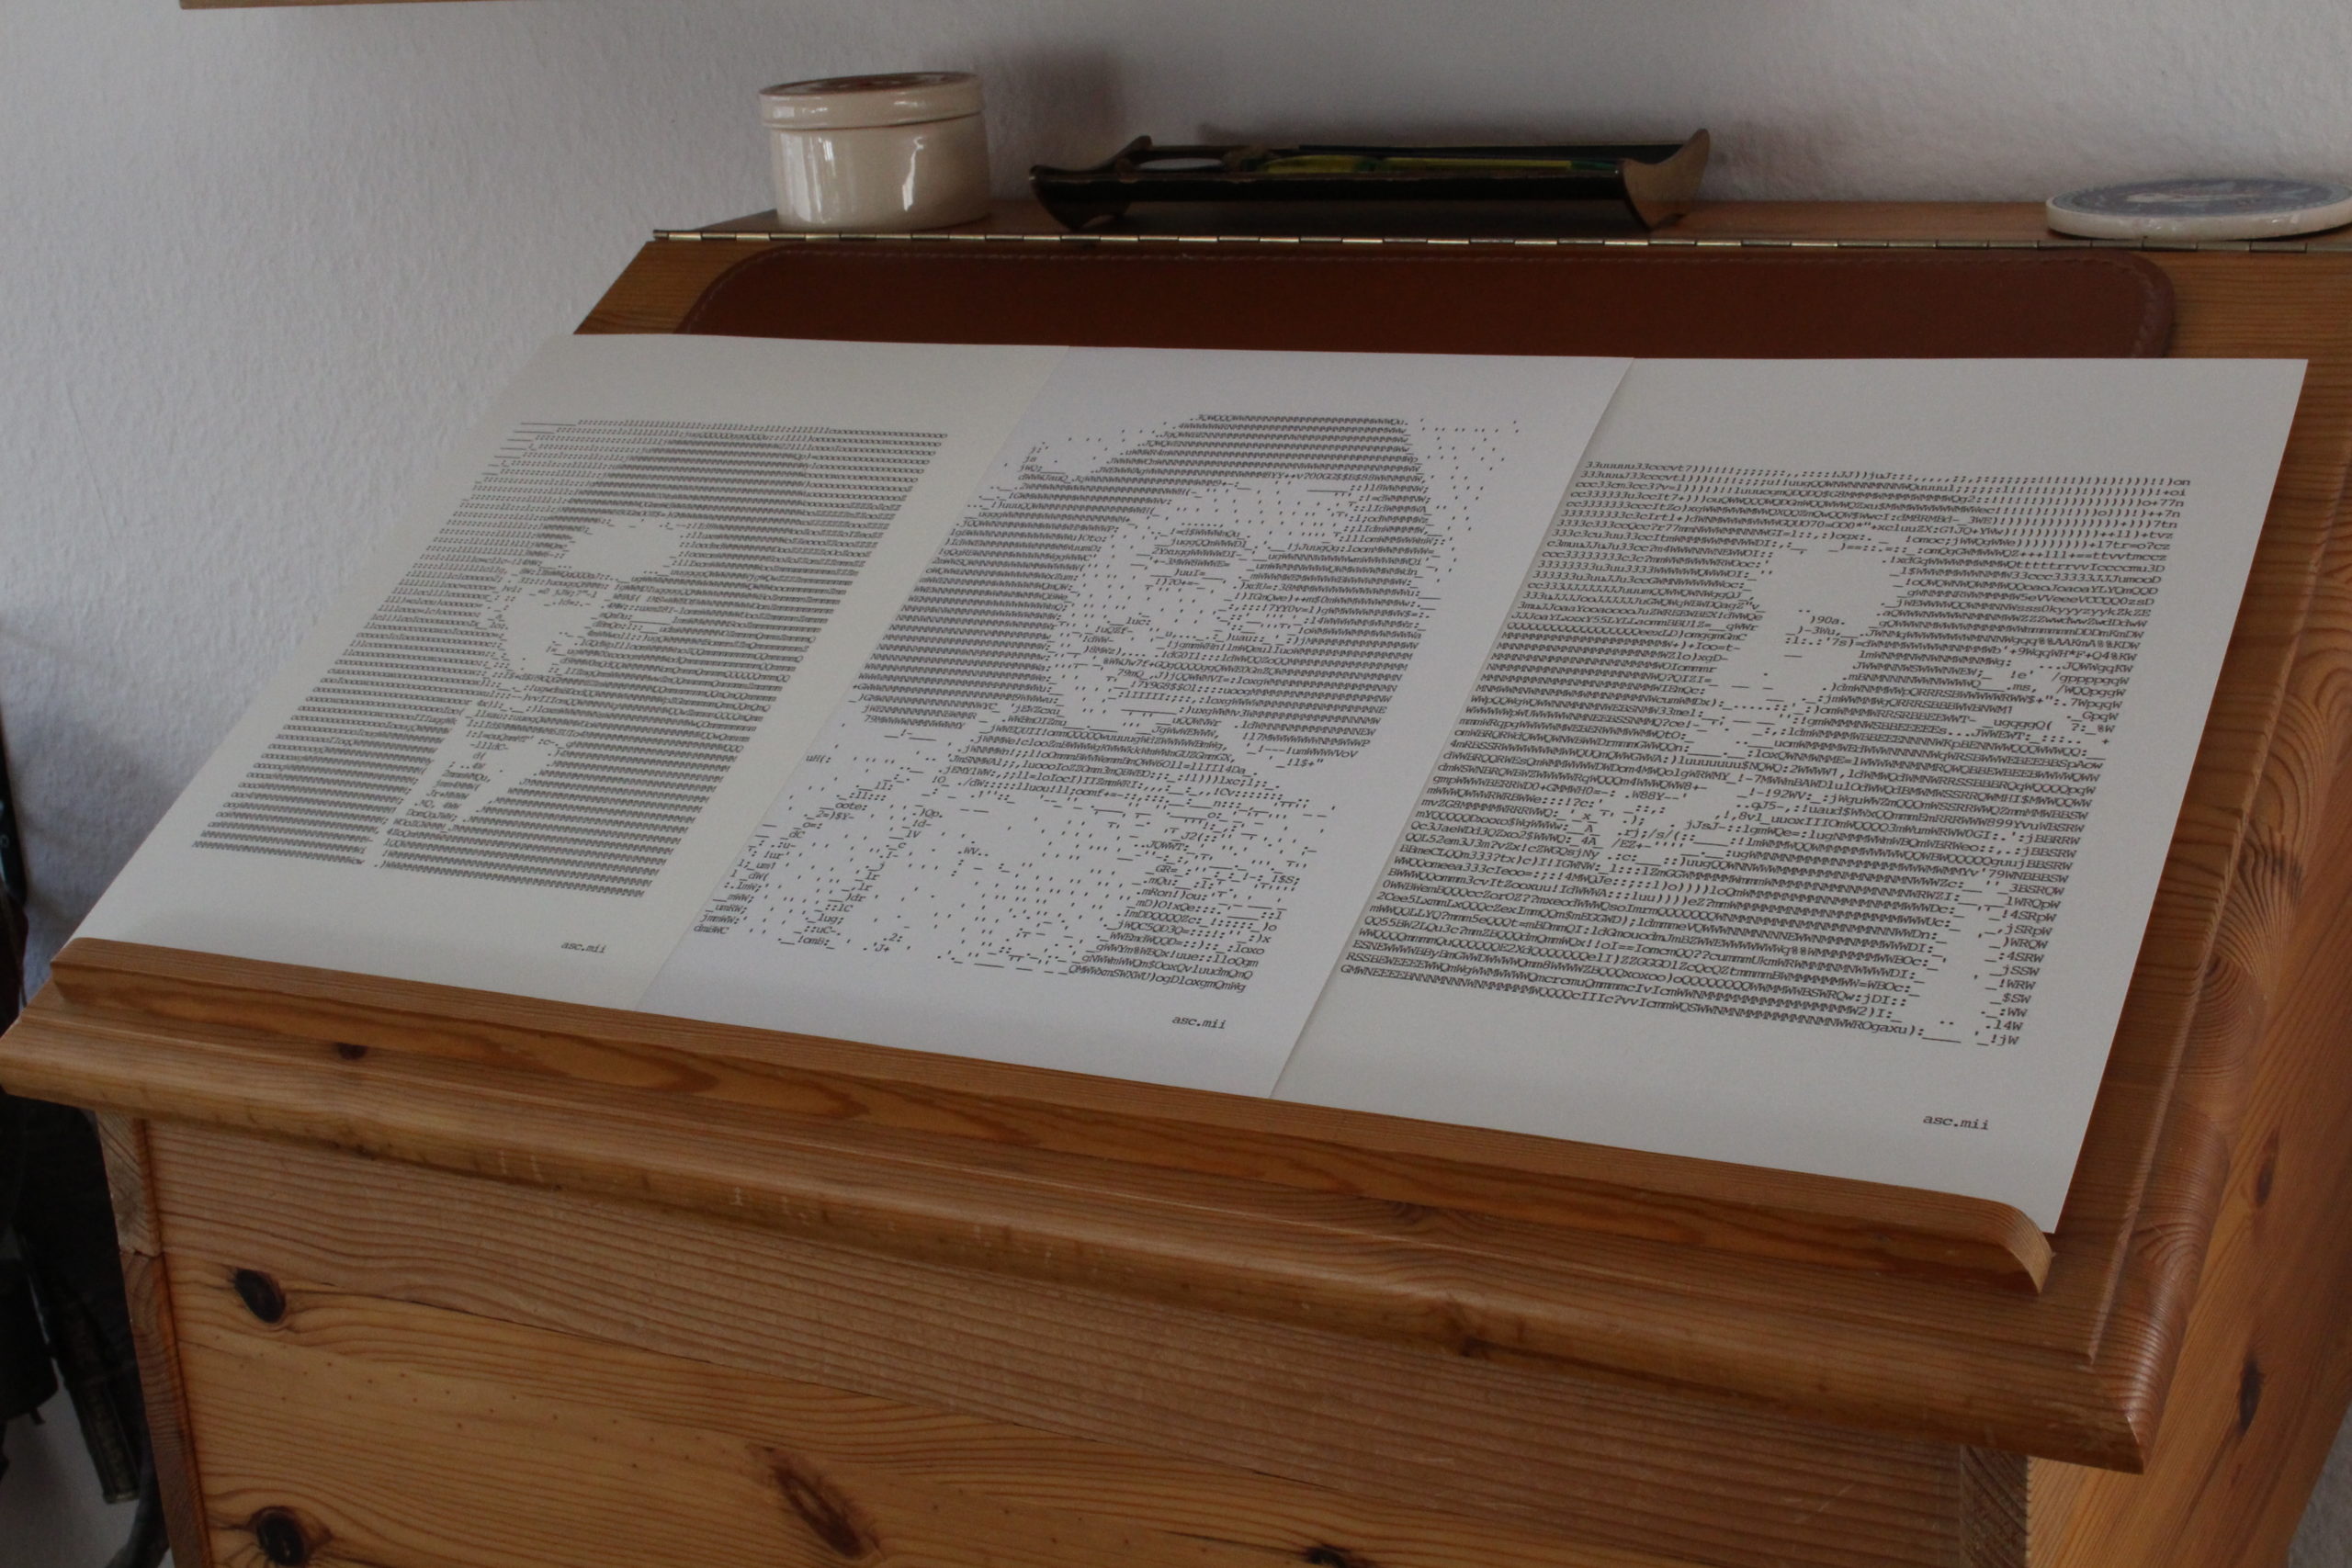 ASCII Art Schreibmaschinenkunst Porträt Berühmtheiten bekannte Gesichter Celebrities Franz Kafka Anne Frank Hannah Arendt